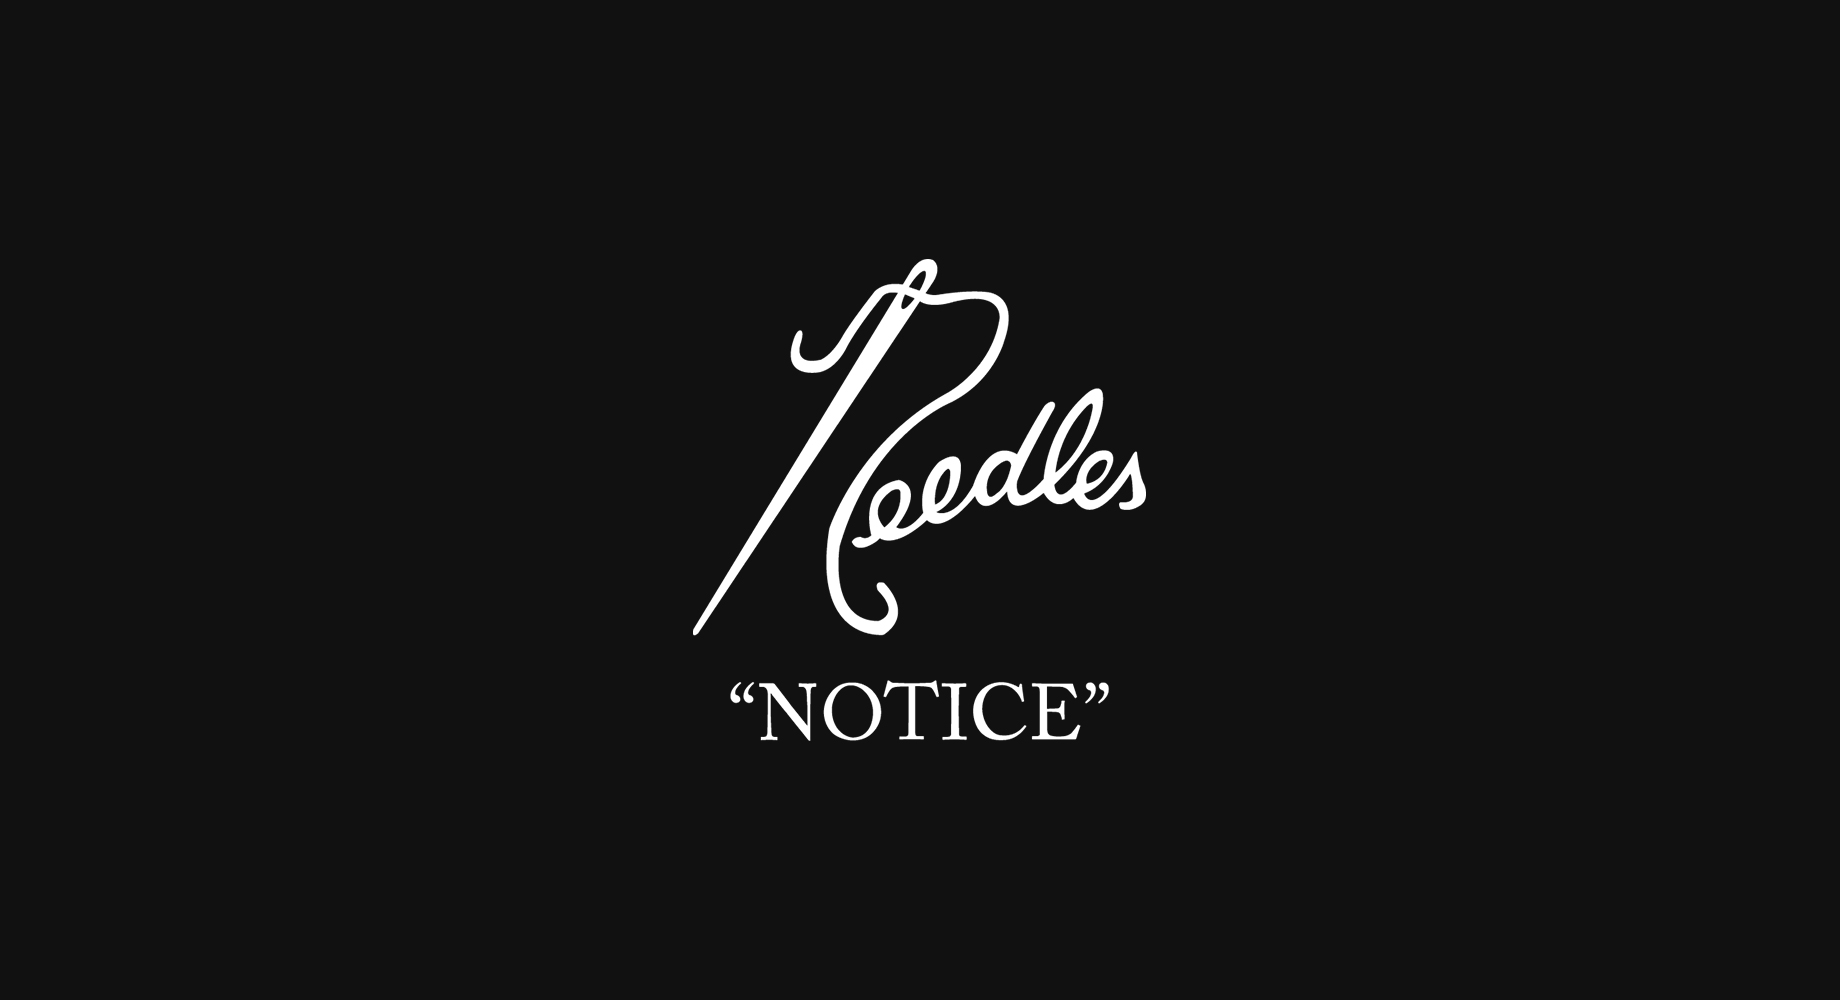 Needles official website | NEWS